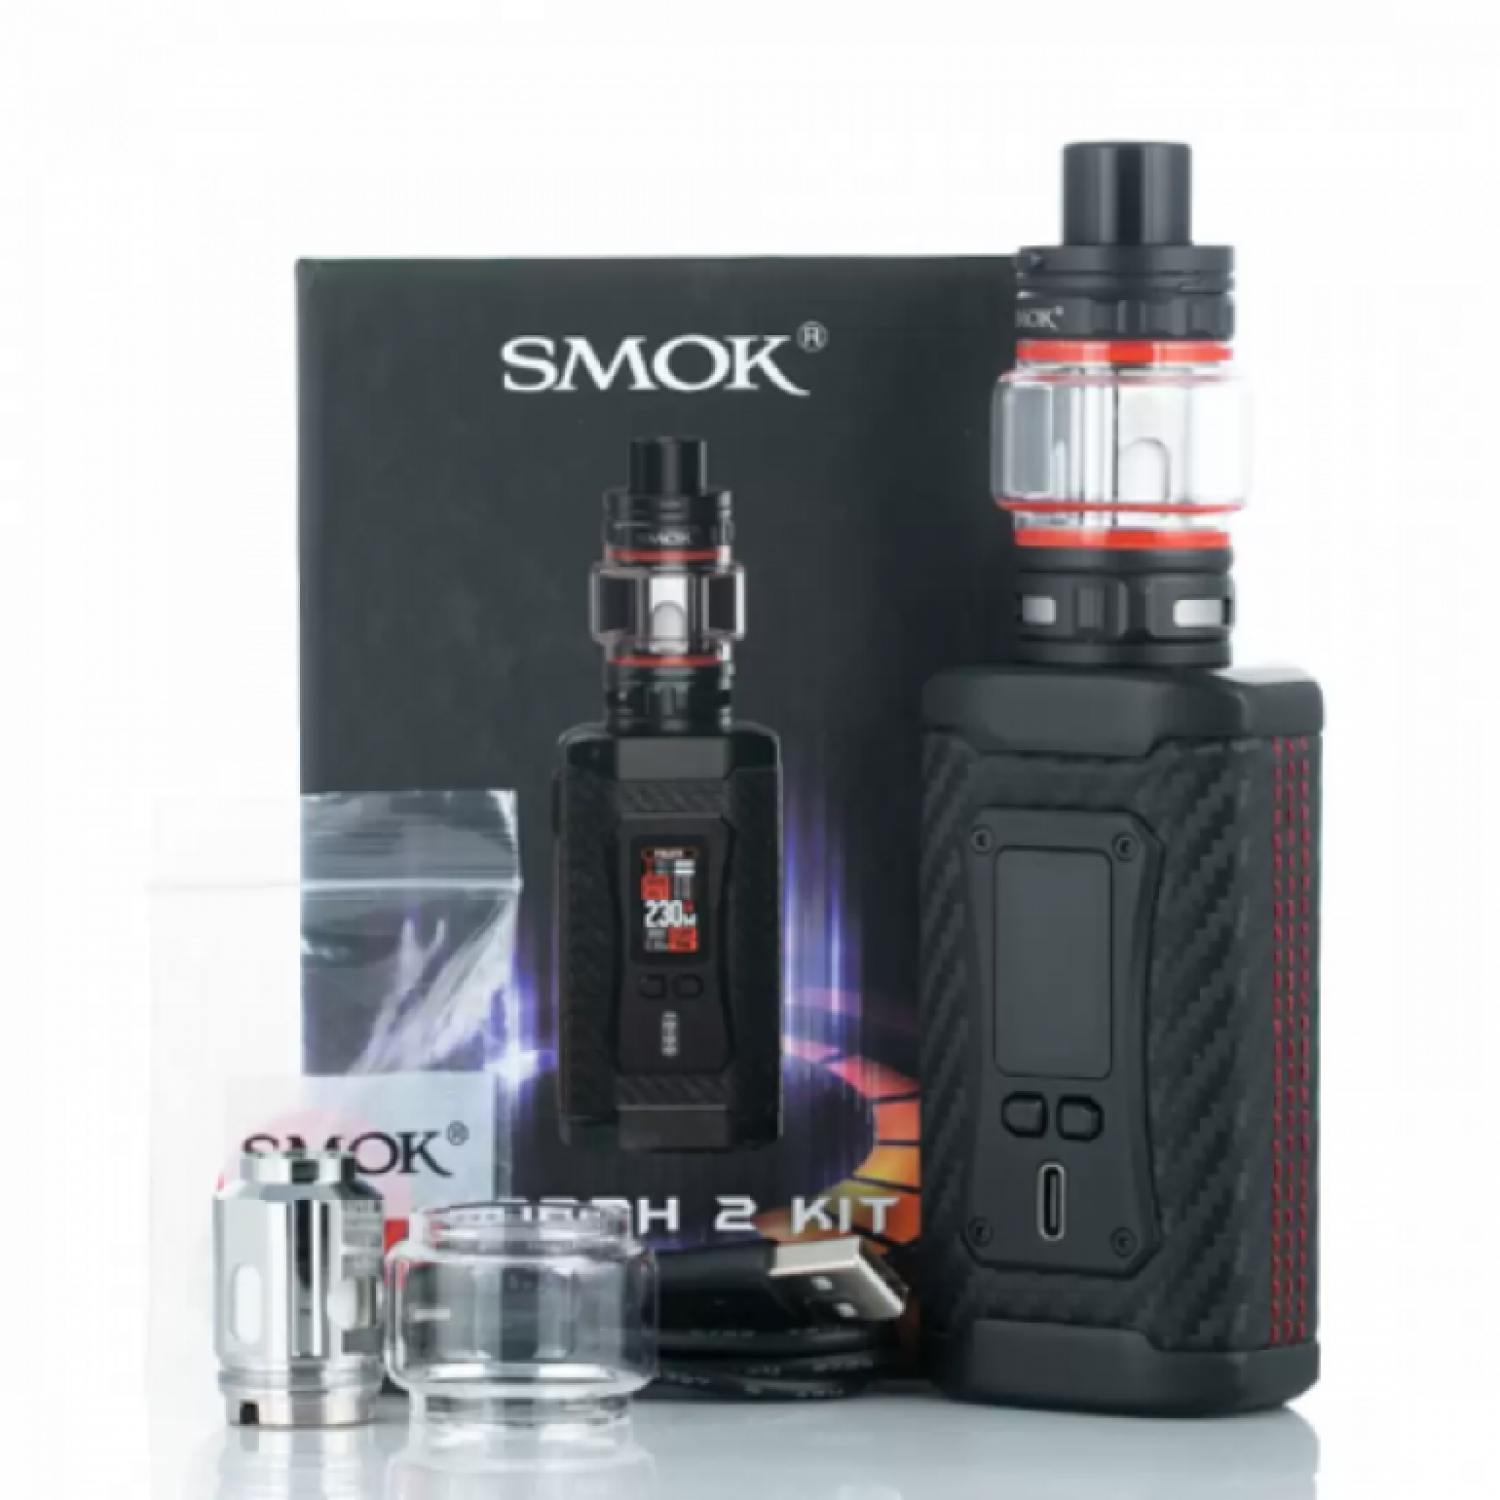 Smok - Morph 2 230 w Elektronik Sigara Kit